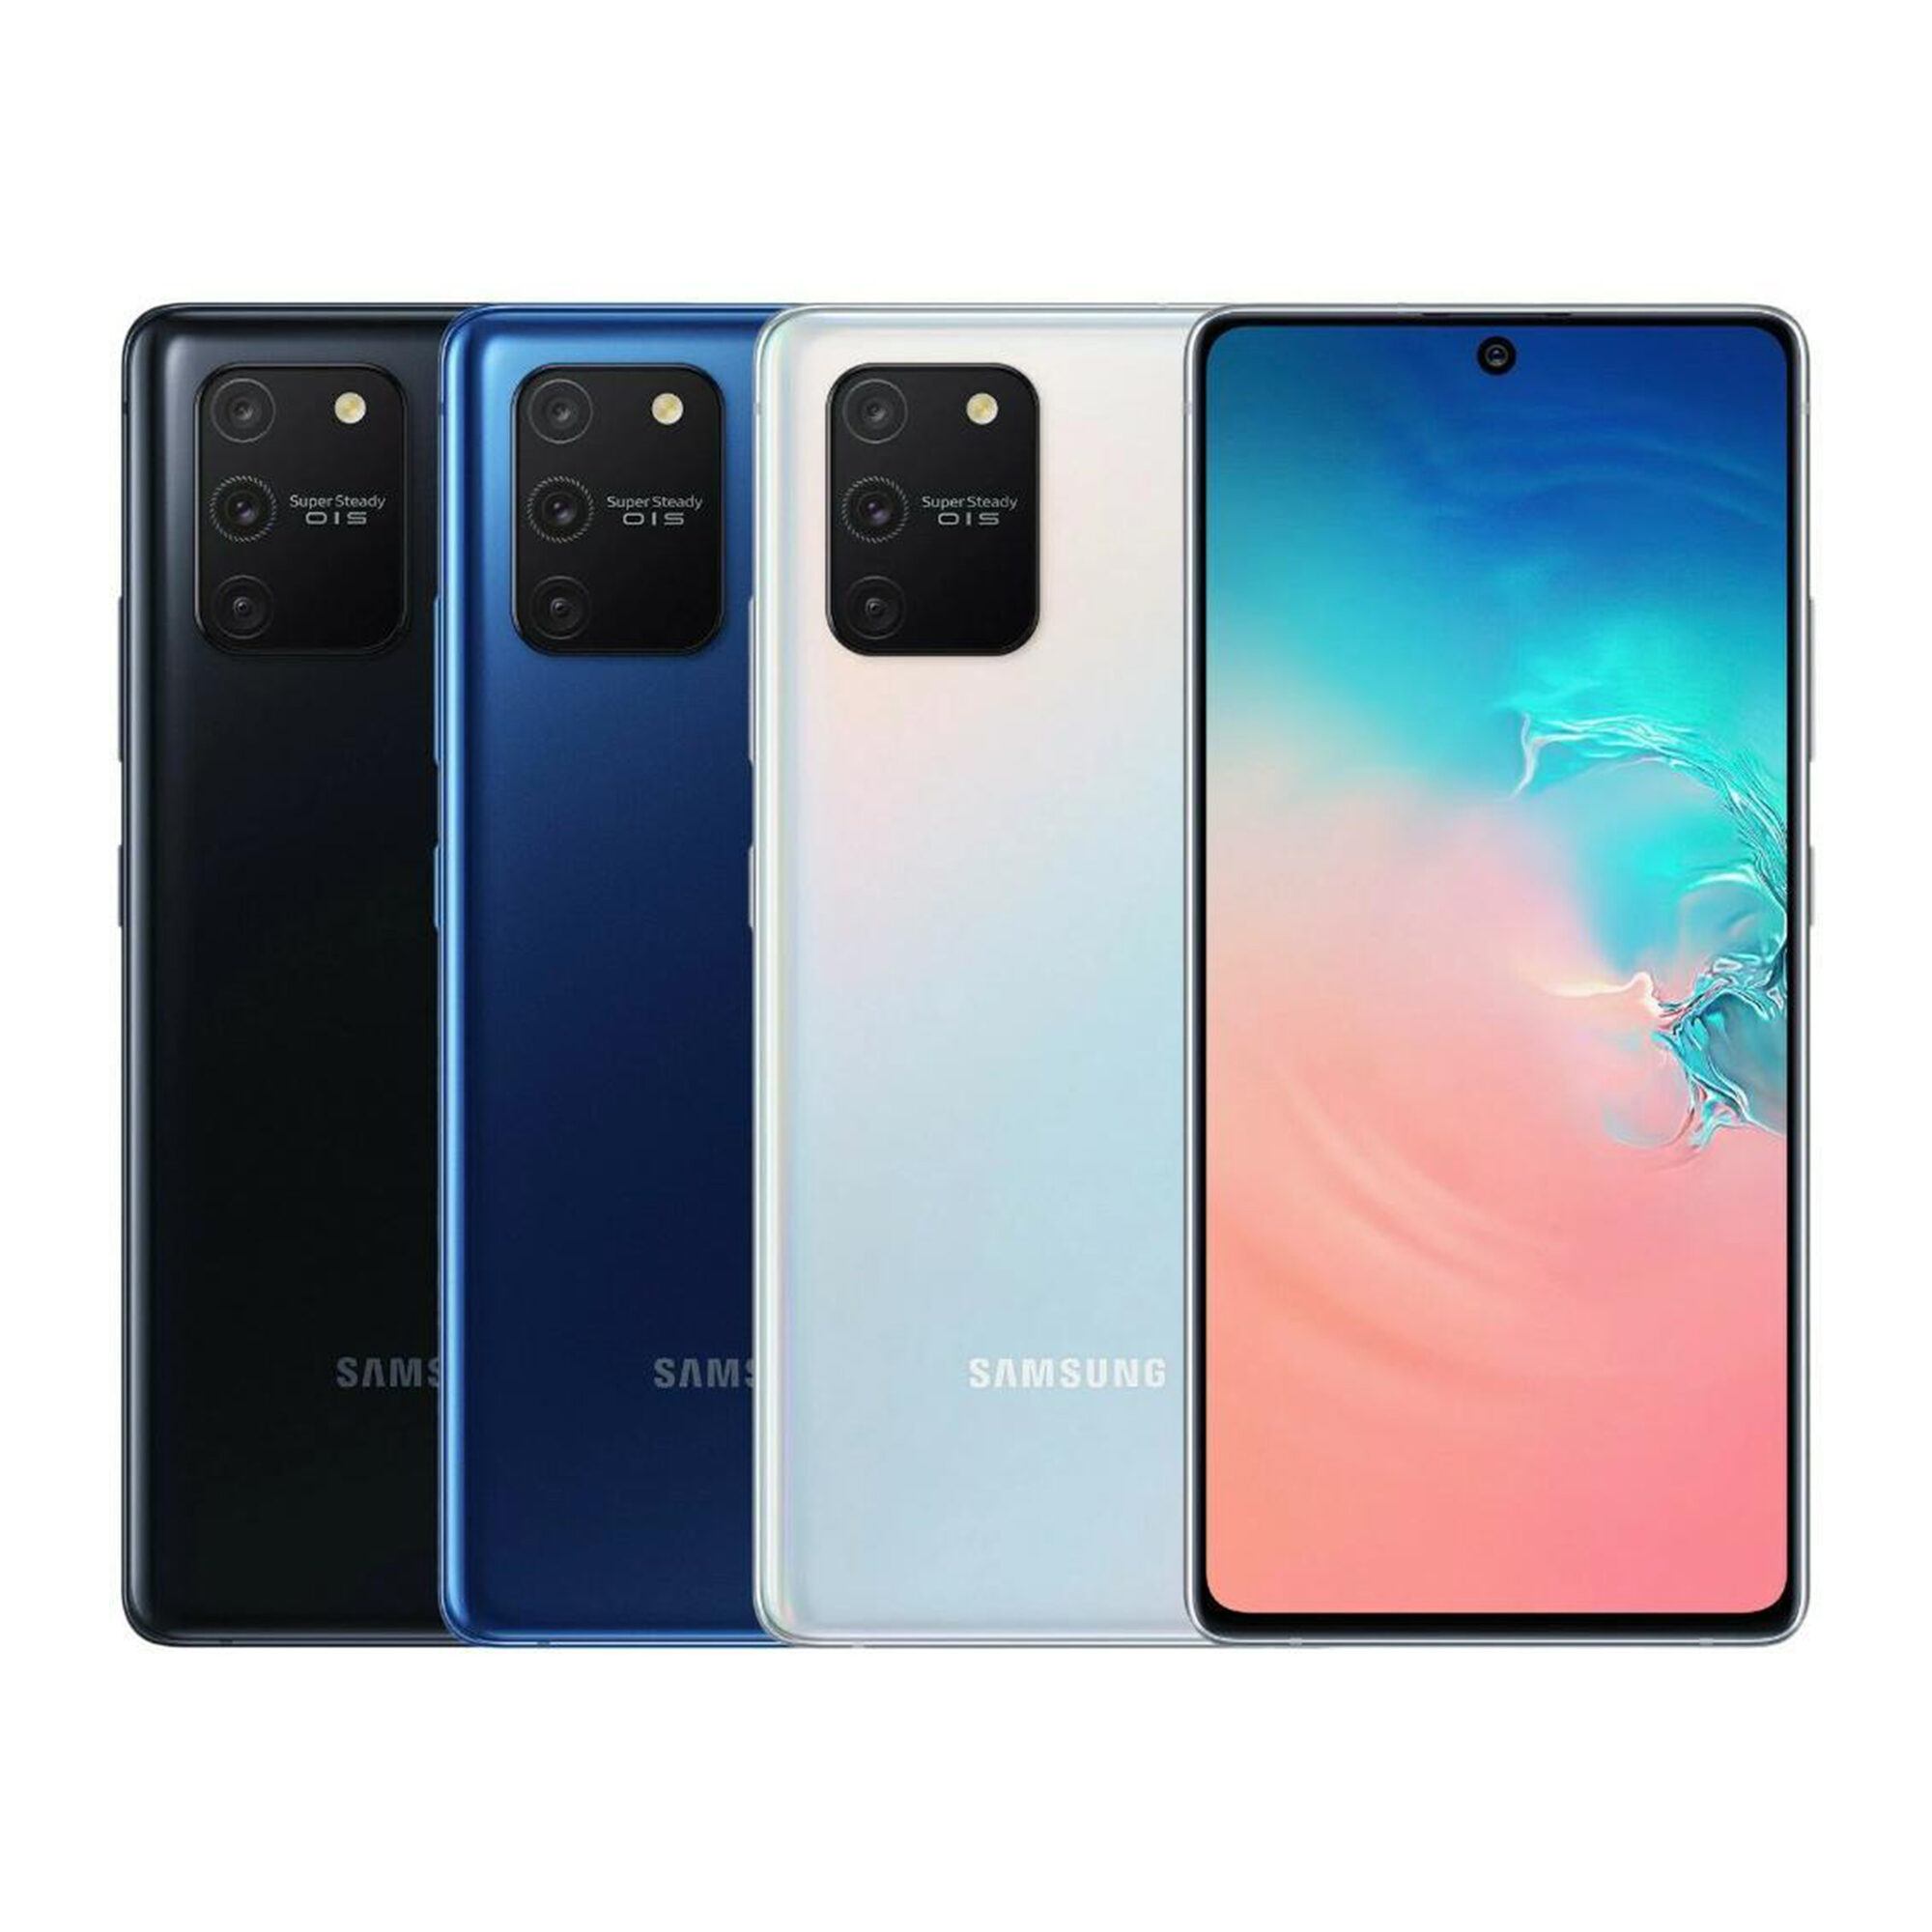 Samsung-Galaxy-S10-Lite-design